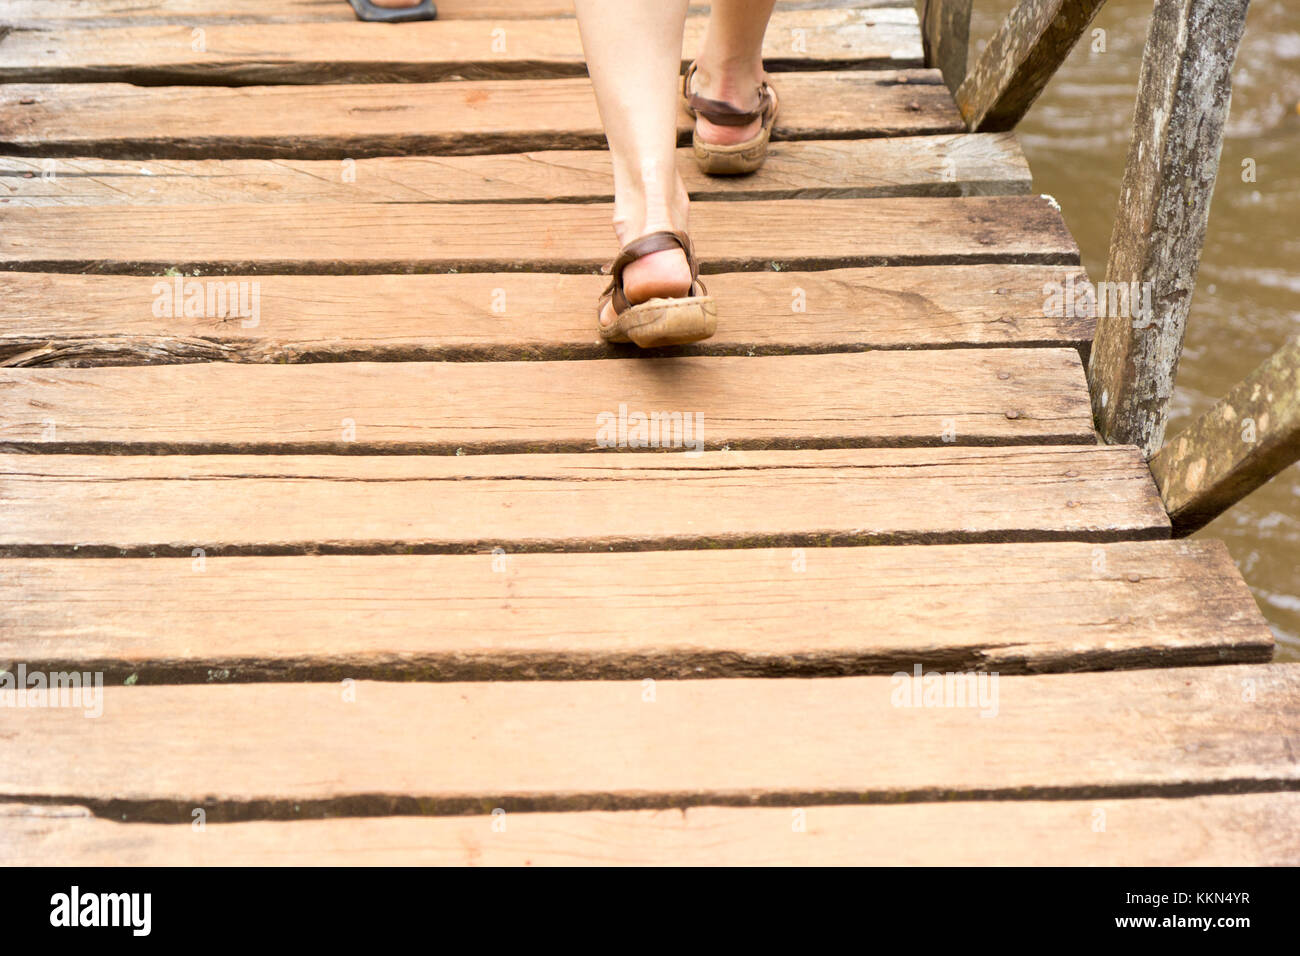 Piedi femminili in sandali che calpestano una barriera di legno (un ponte pedonale) che attraversa l'acqua a Ssezibwa Falls Uganda. Foto scattata il 23 2017 aprile. Foto Stock